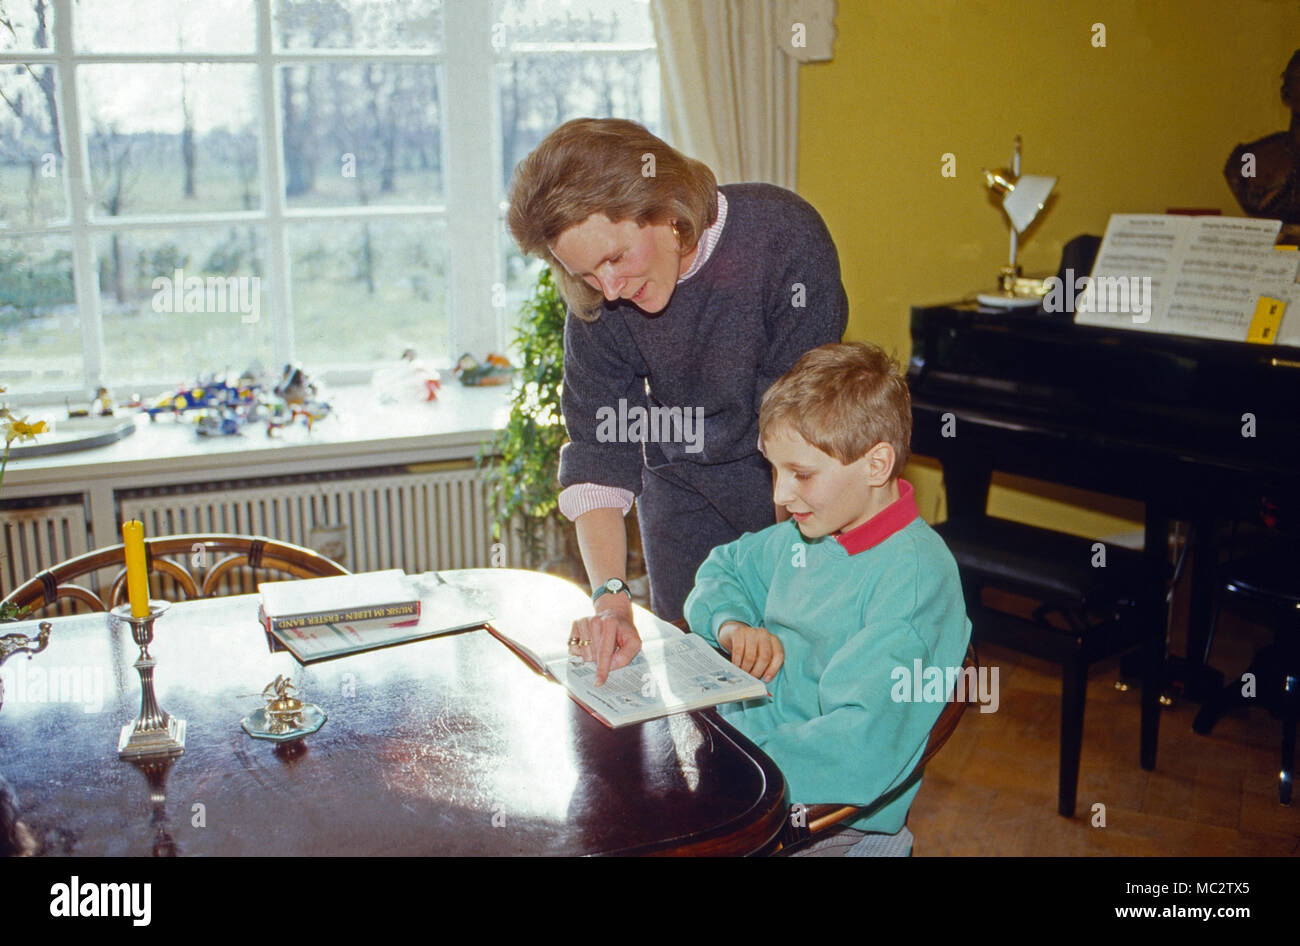 Georg Friedrich Prinz von Preußen, mit seiner Mutter Donata in Fischerhude, Deutschland 1986. Georg Friedrich Prinz von Preußen, der mit seiner Mutter Donata bei Fischerhude, Deutschland 1986. Stockfoto